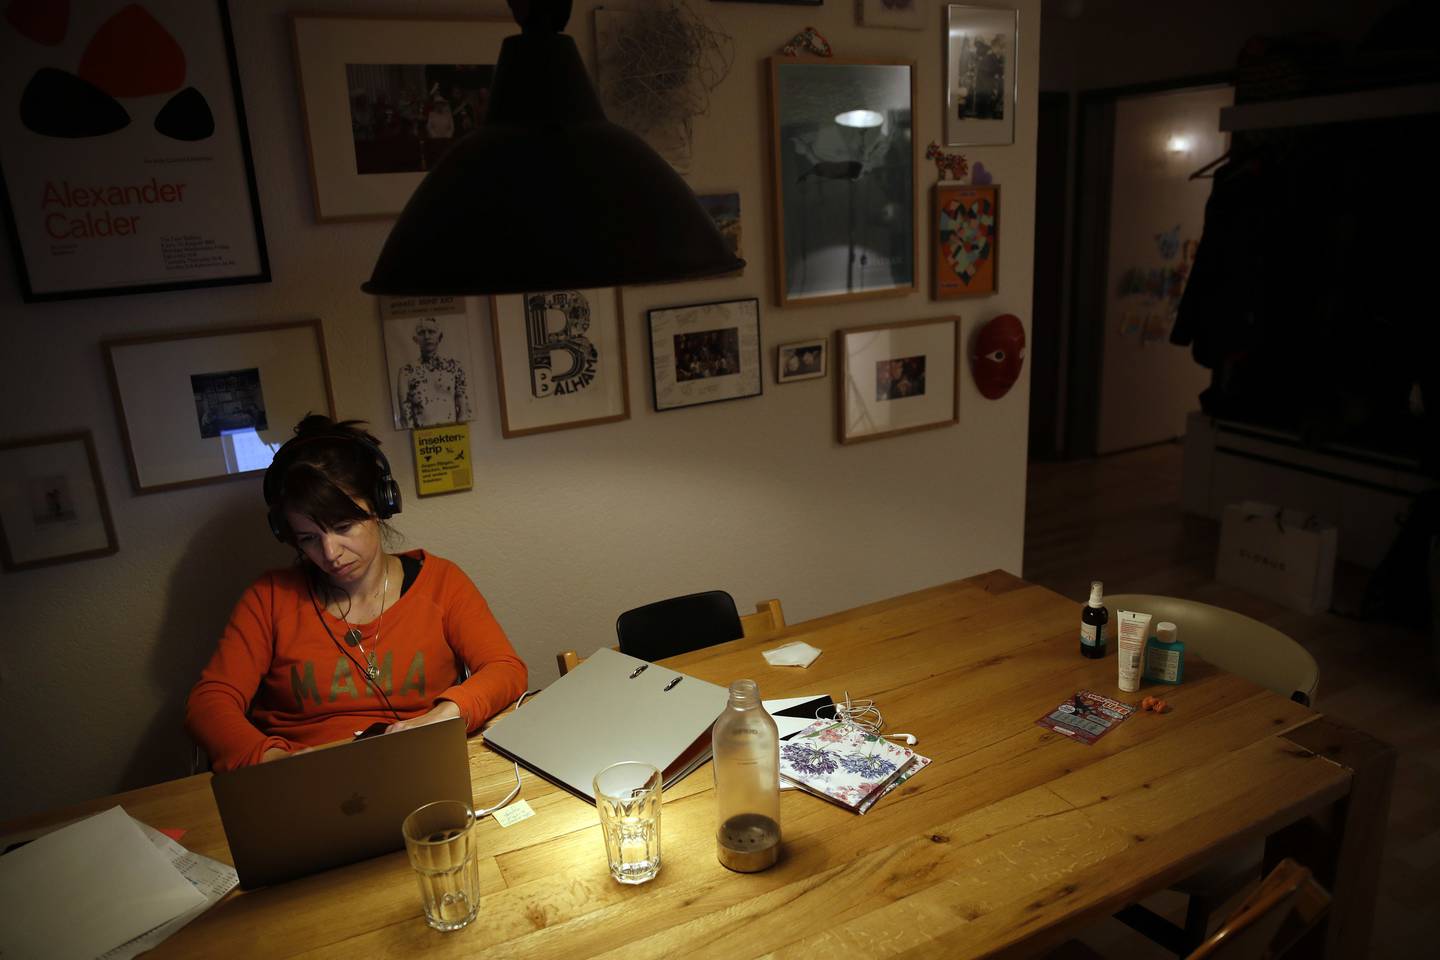 Una mujer trabaja con un ordenador portátil en la cocina en una fotografía tomada en Berna, Suiza, el miércoles 1 de abril de 2020.